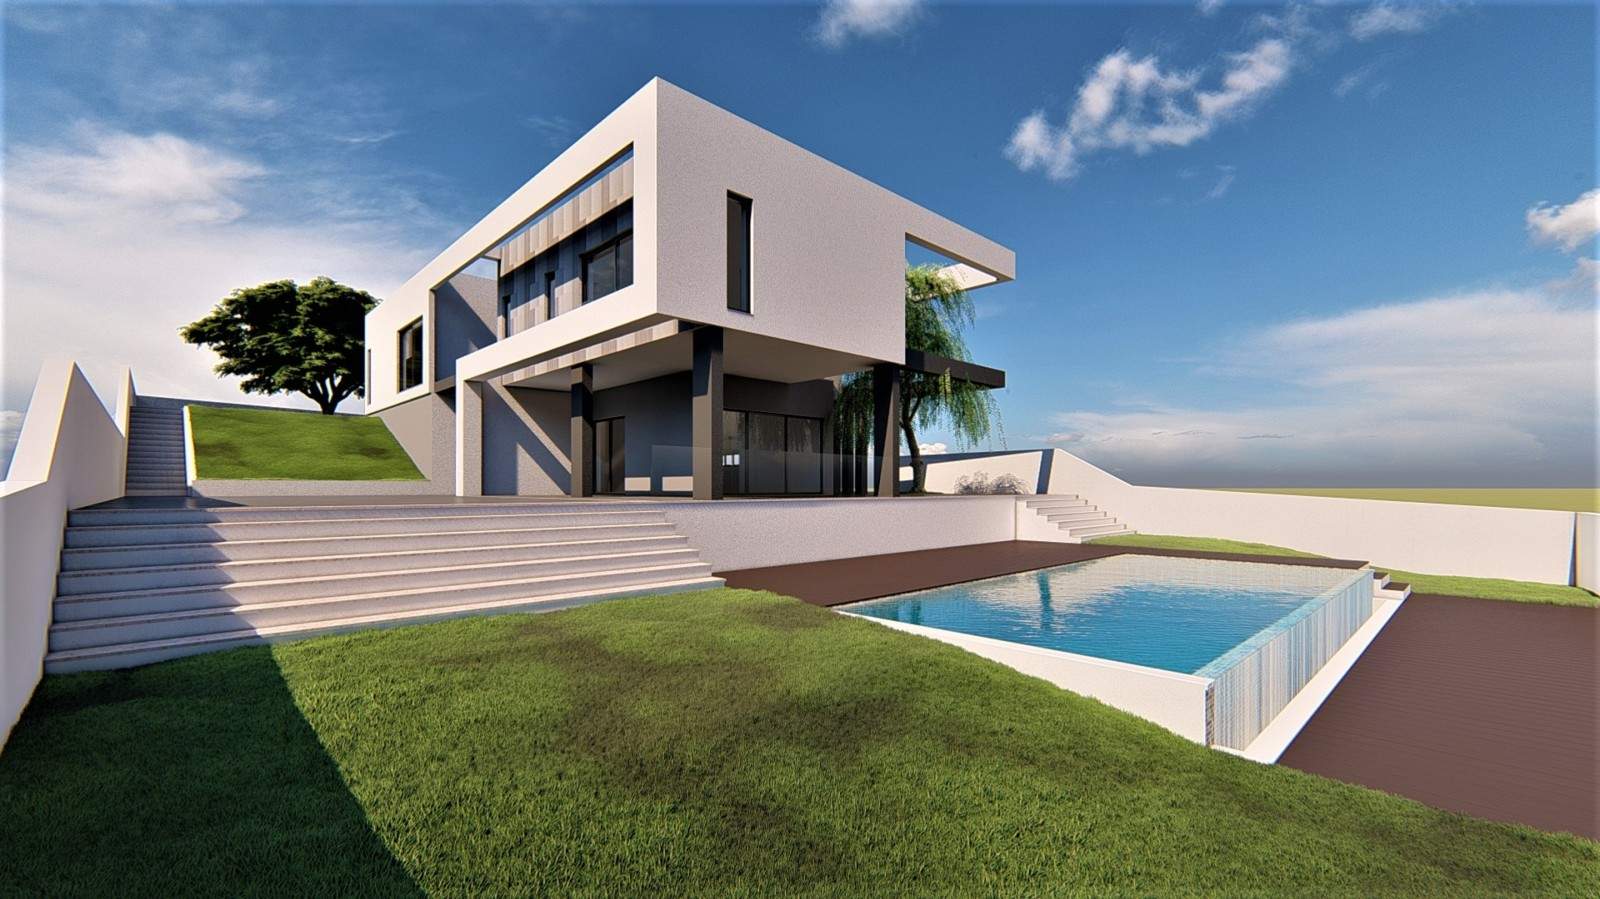 Villa de 3 dormitorios en construcción en venta, en Vilamoura, Algarve_213451